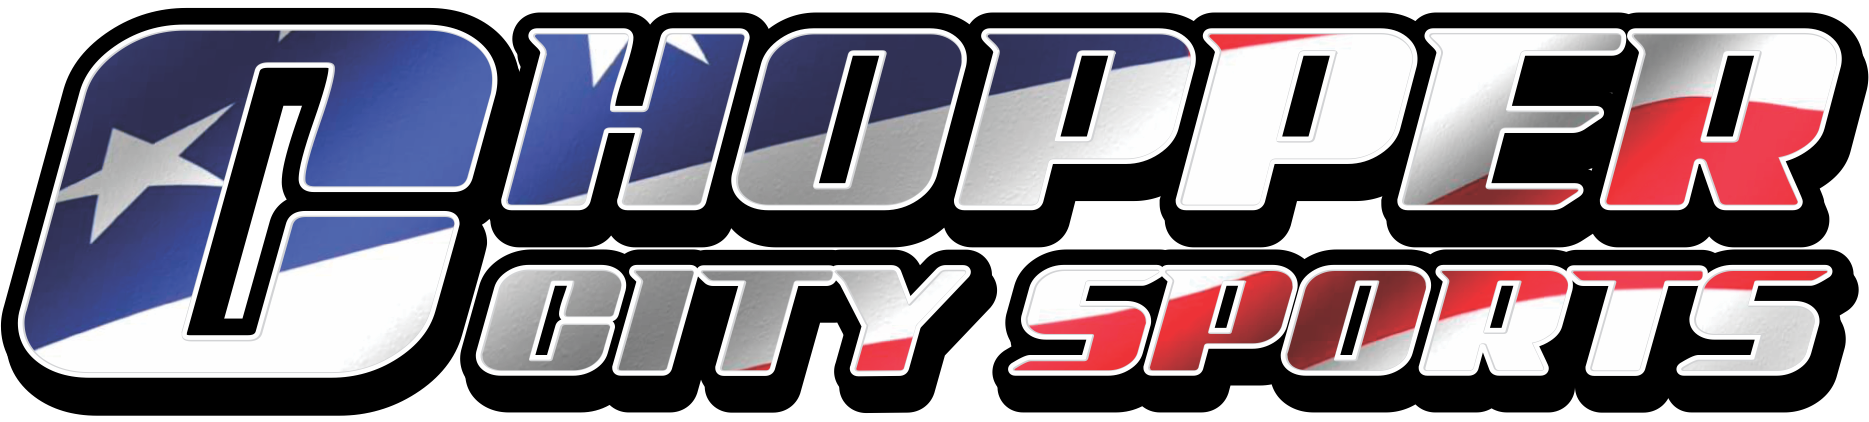 Chopper City Sports